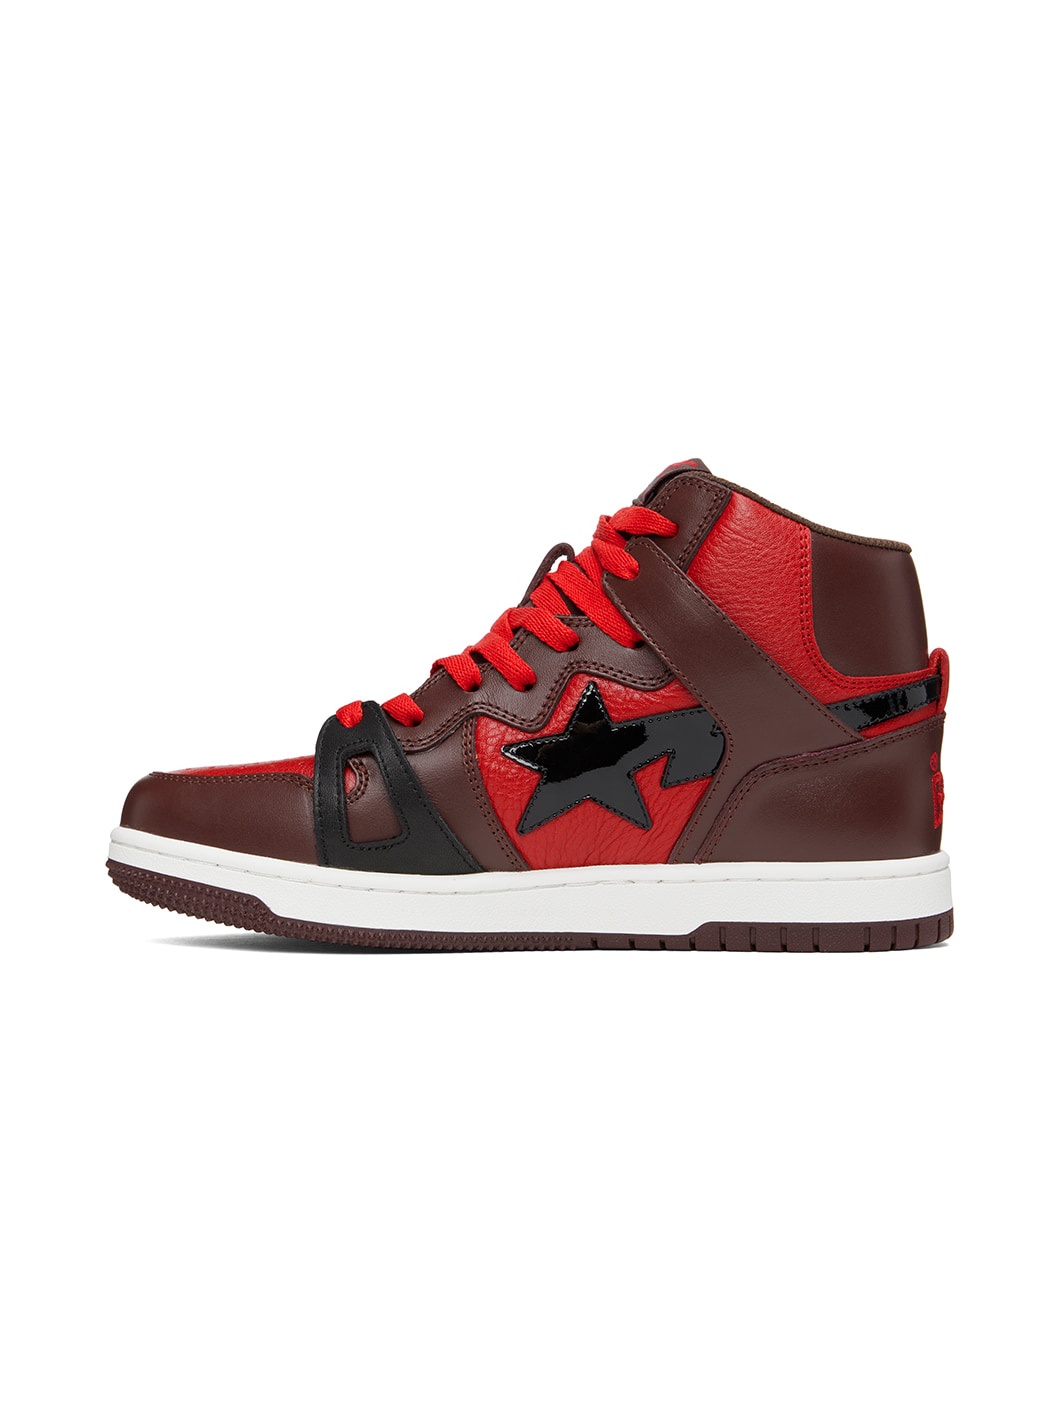 Red & Brown Sta 93 Hi Sneakers - 3